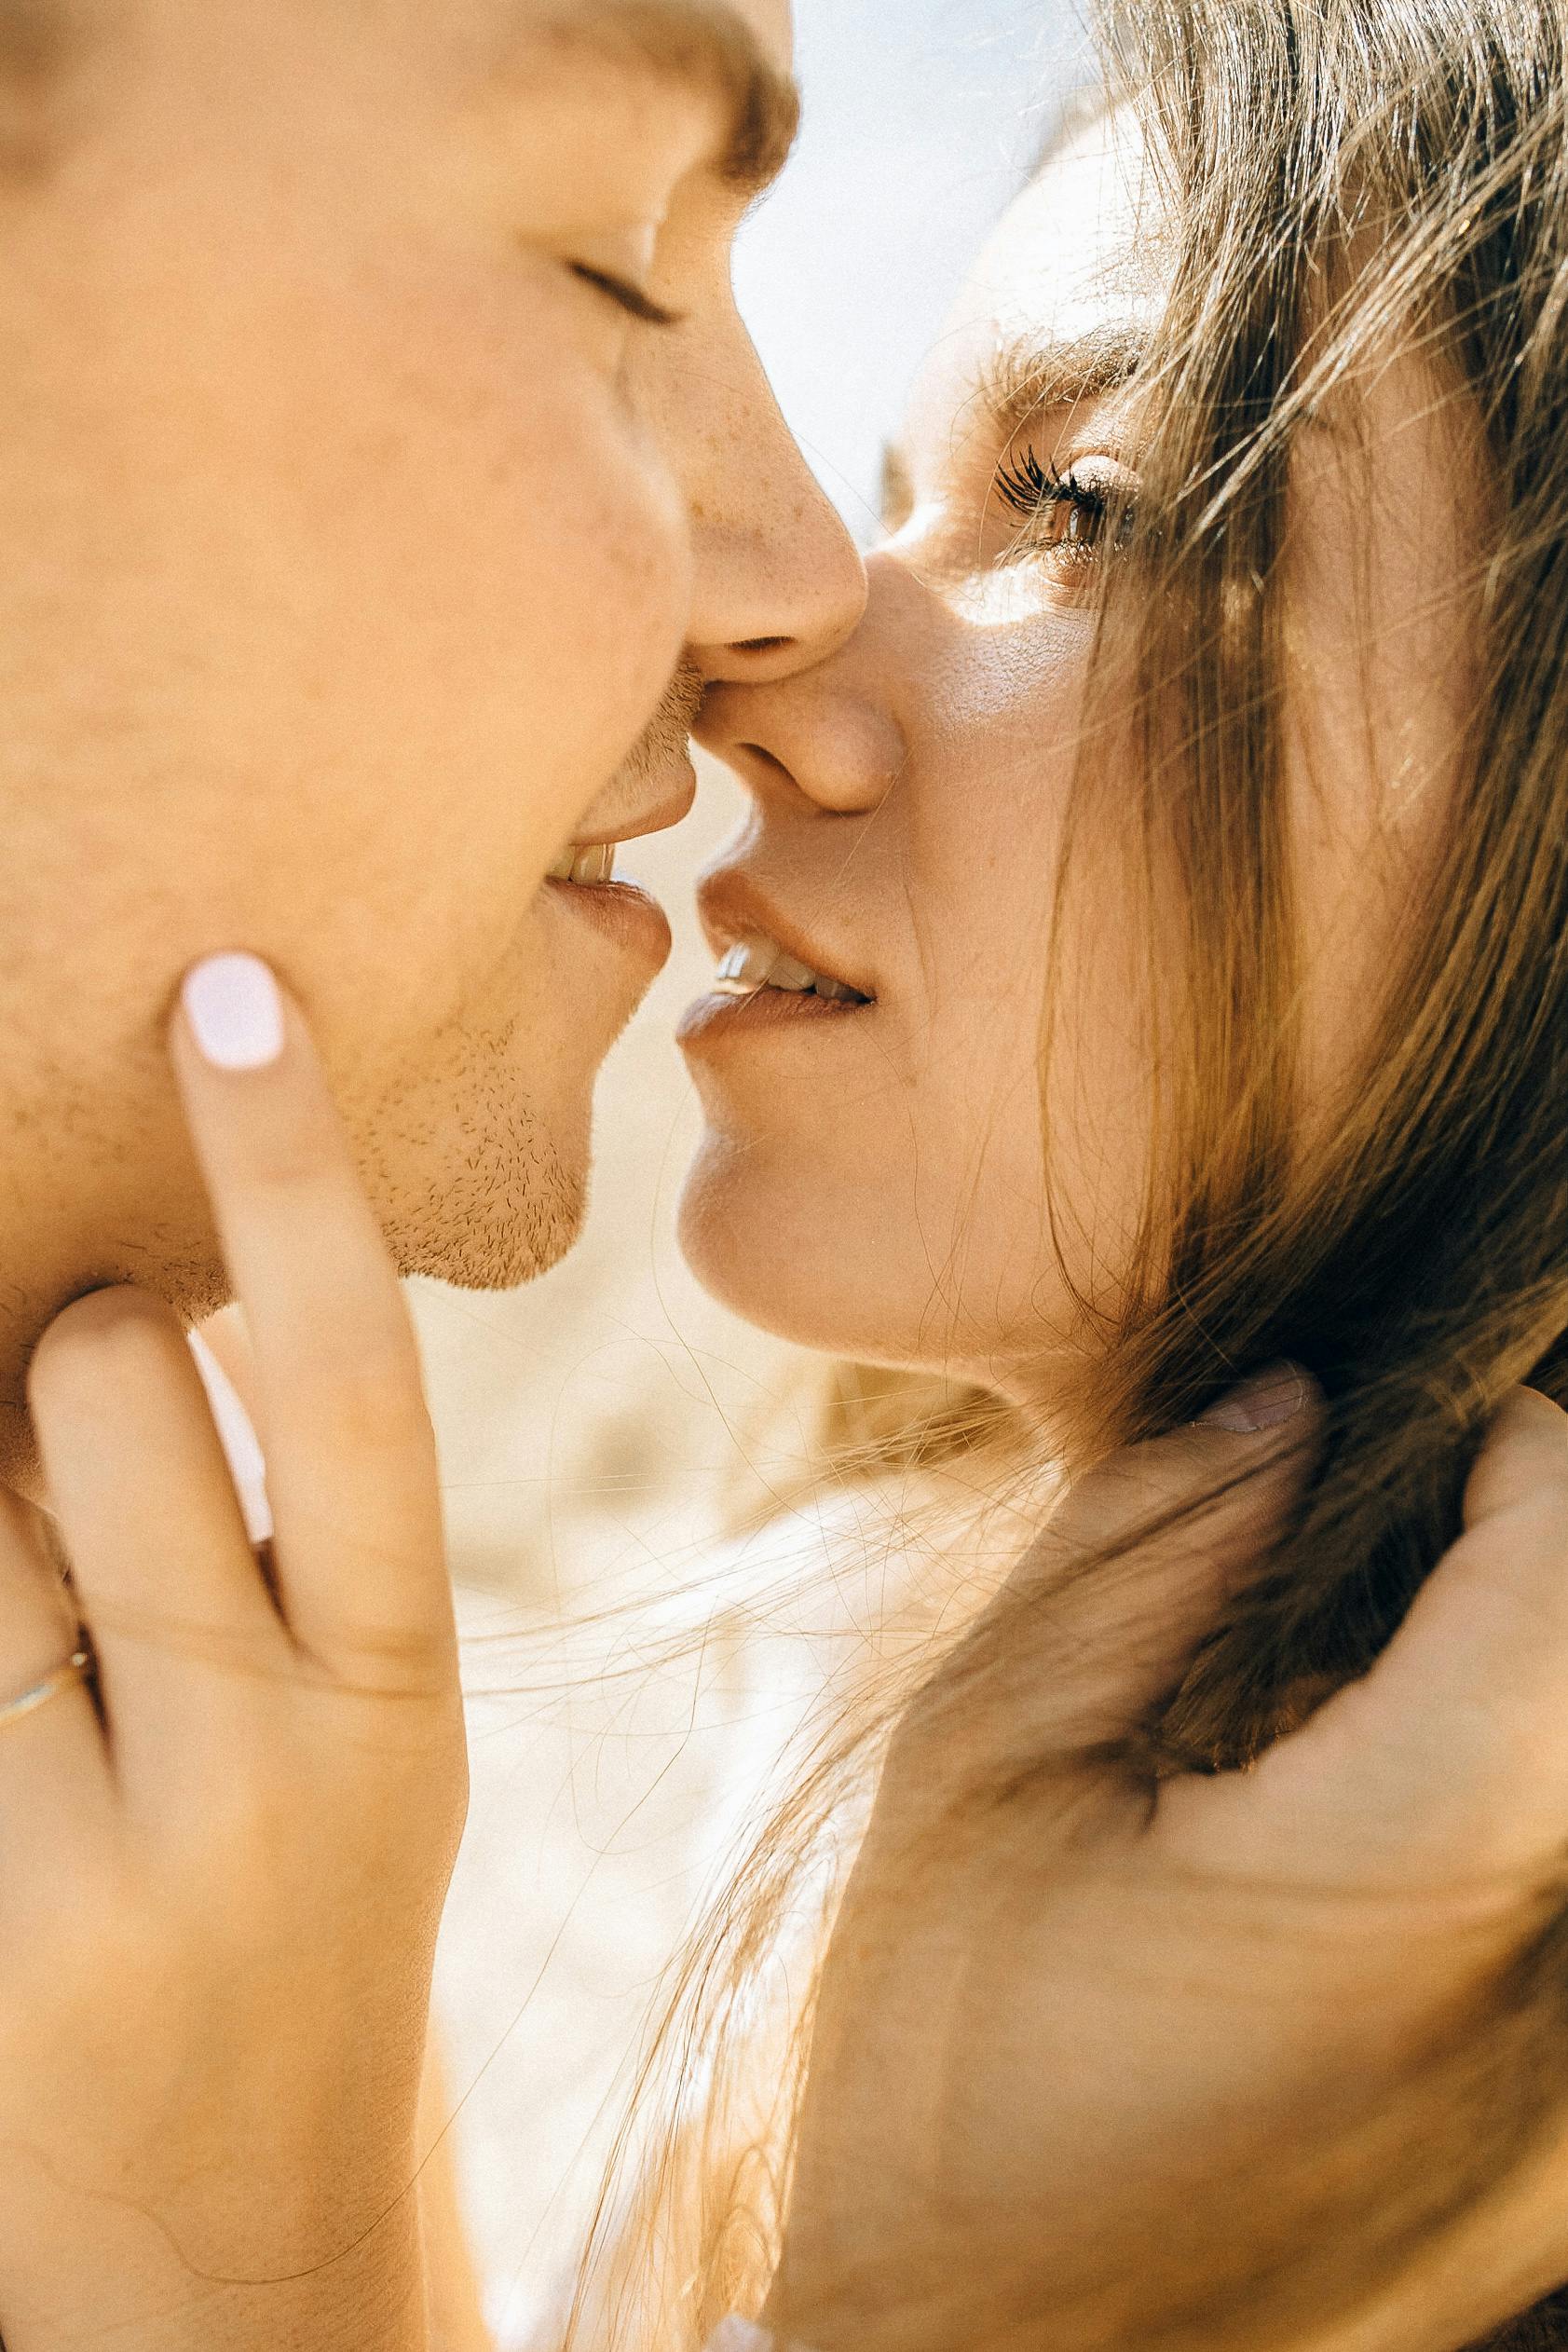 Una pareja besándose | Fuente: Pexels